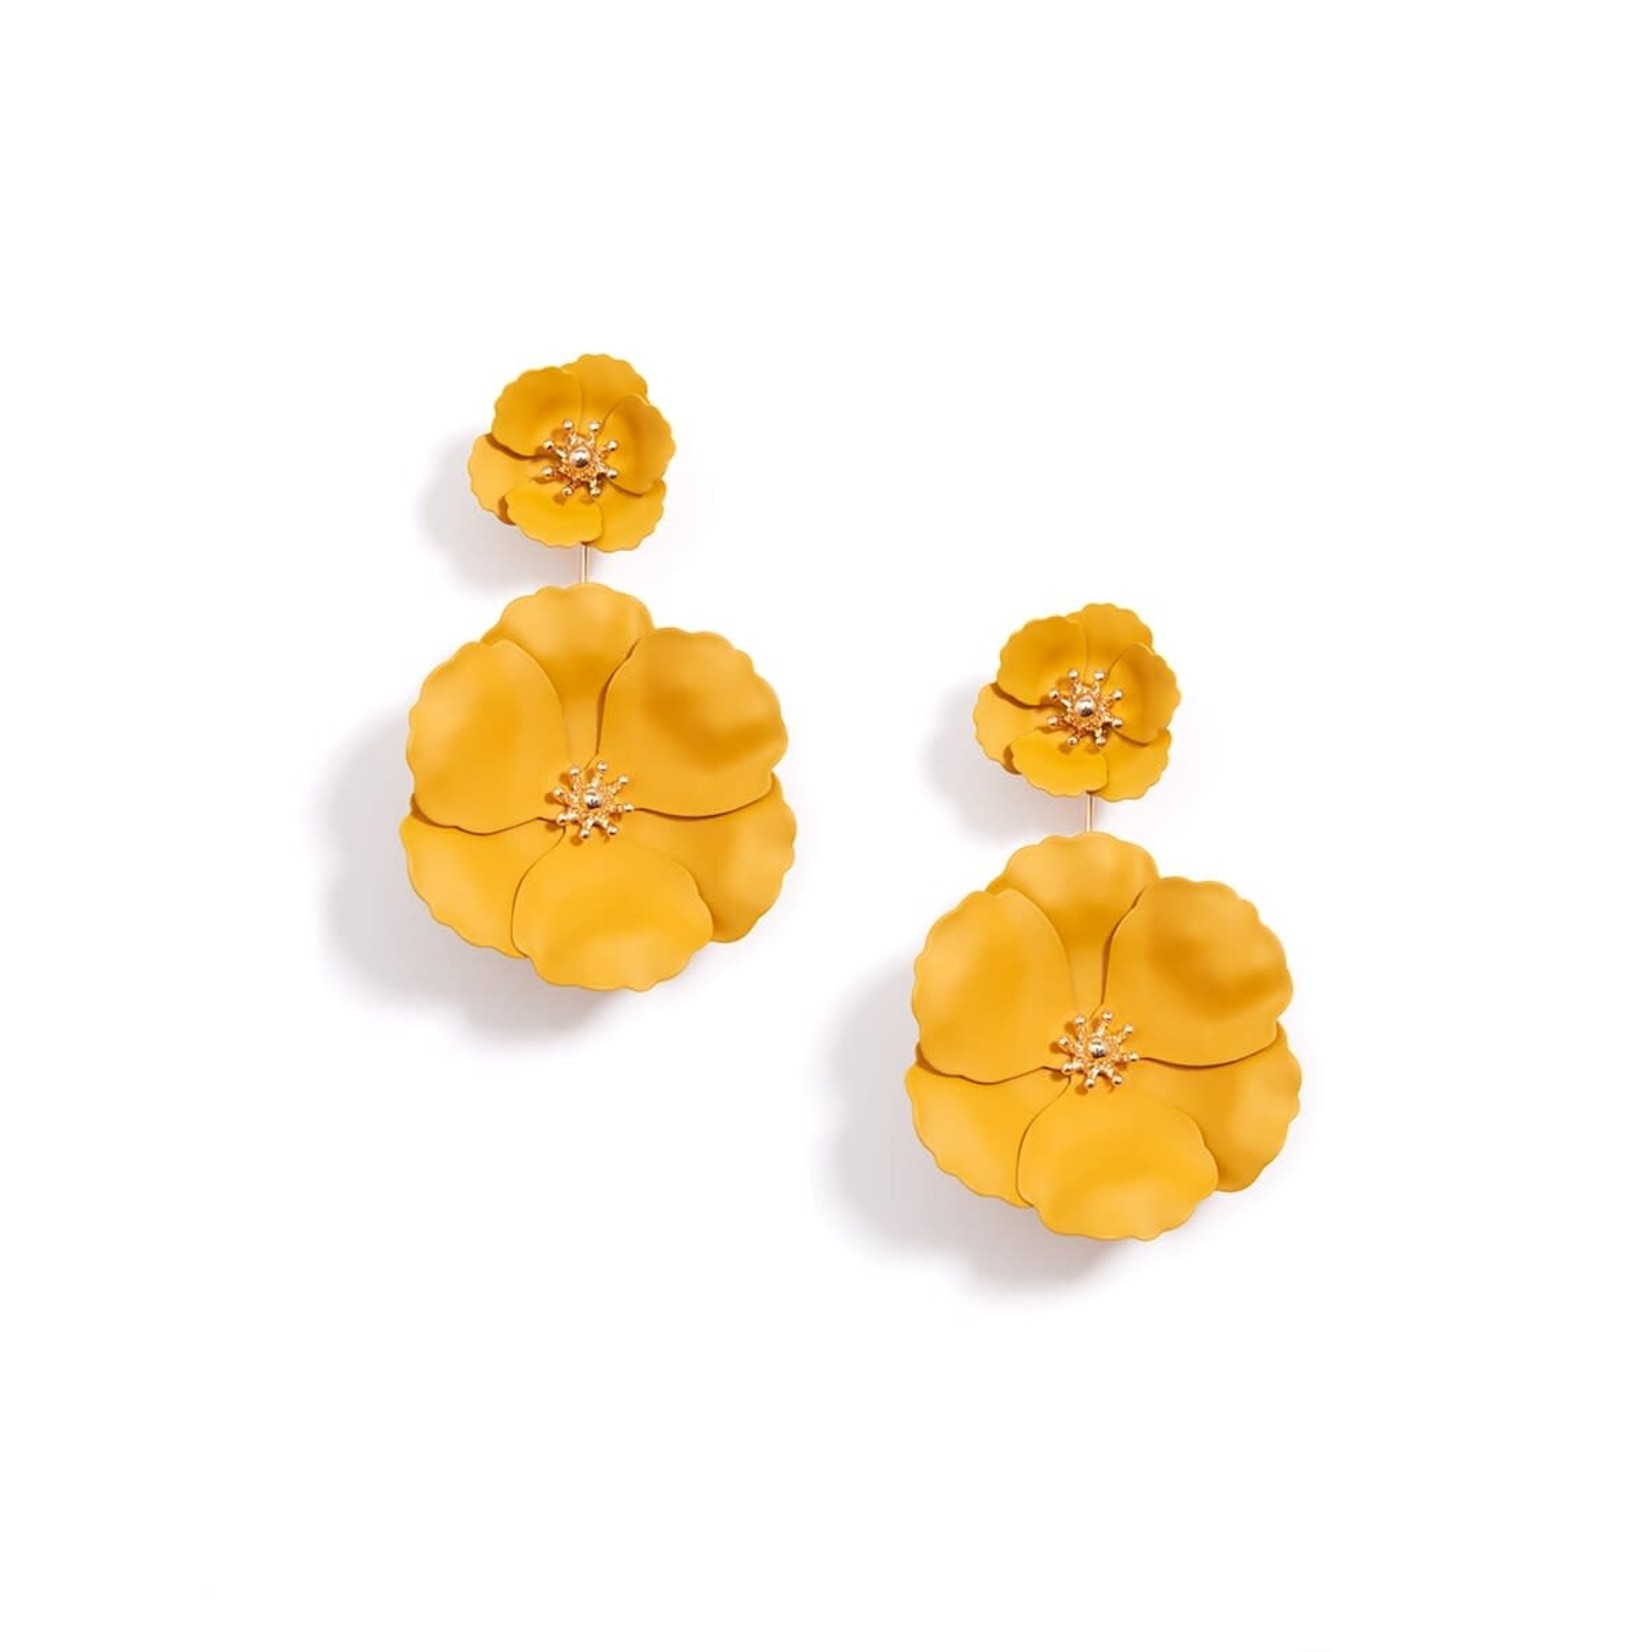 Zenzii Flower Power Honey Metal Convertible Earrings w/18K Gold